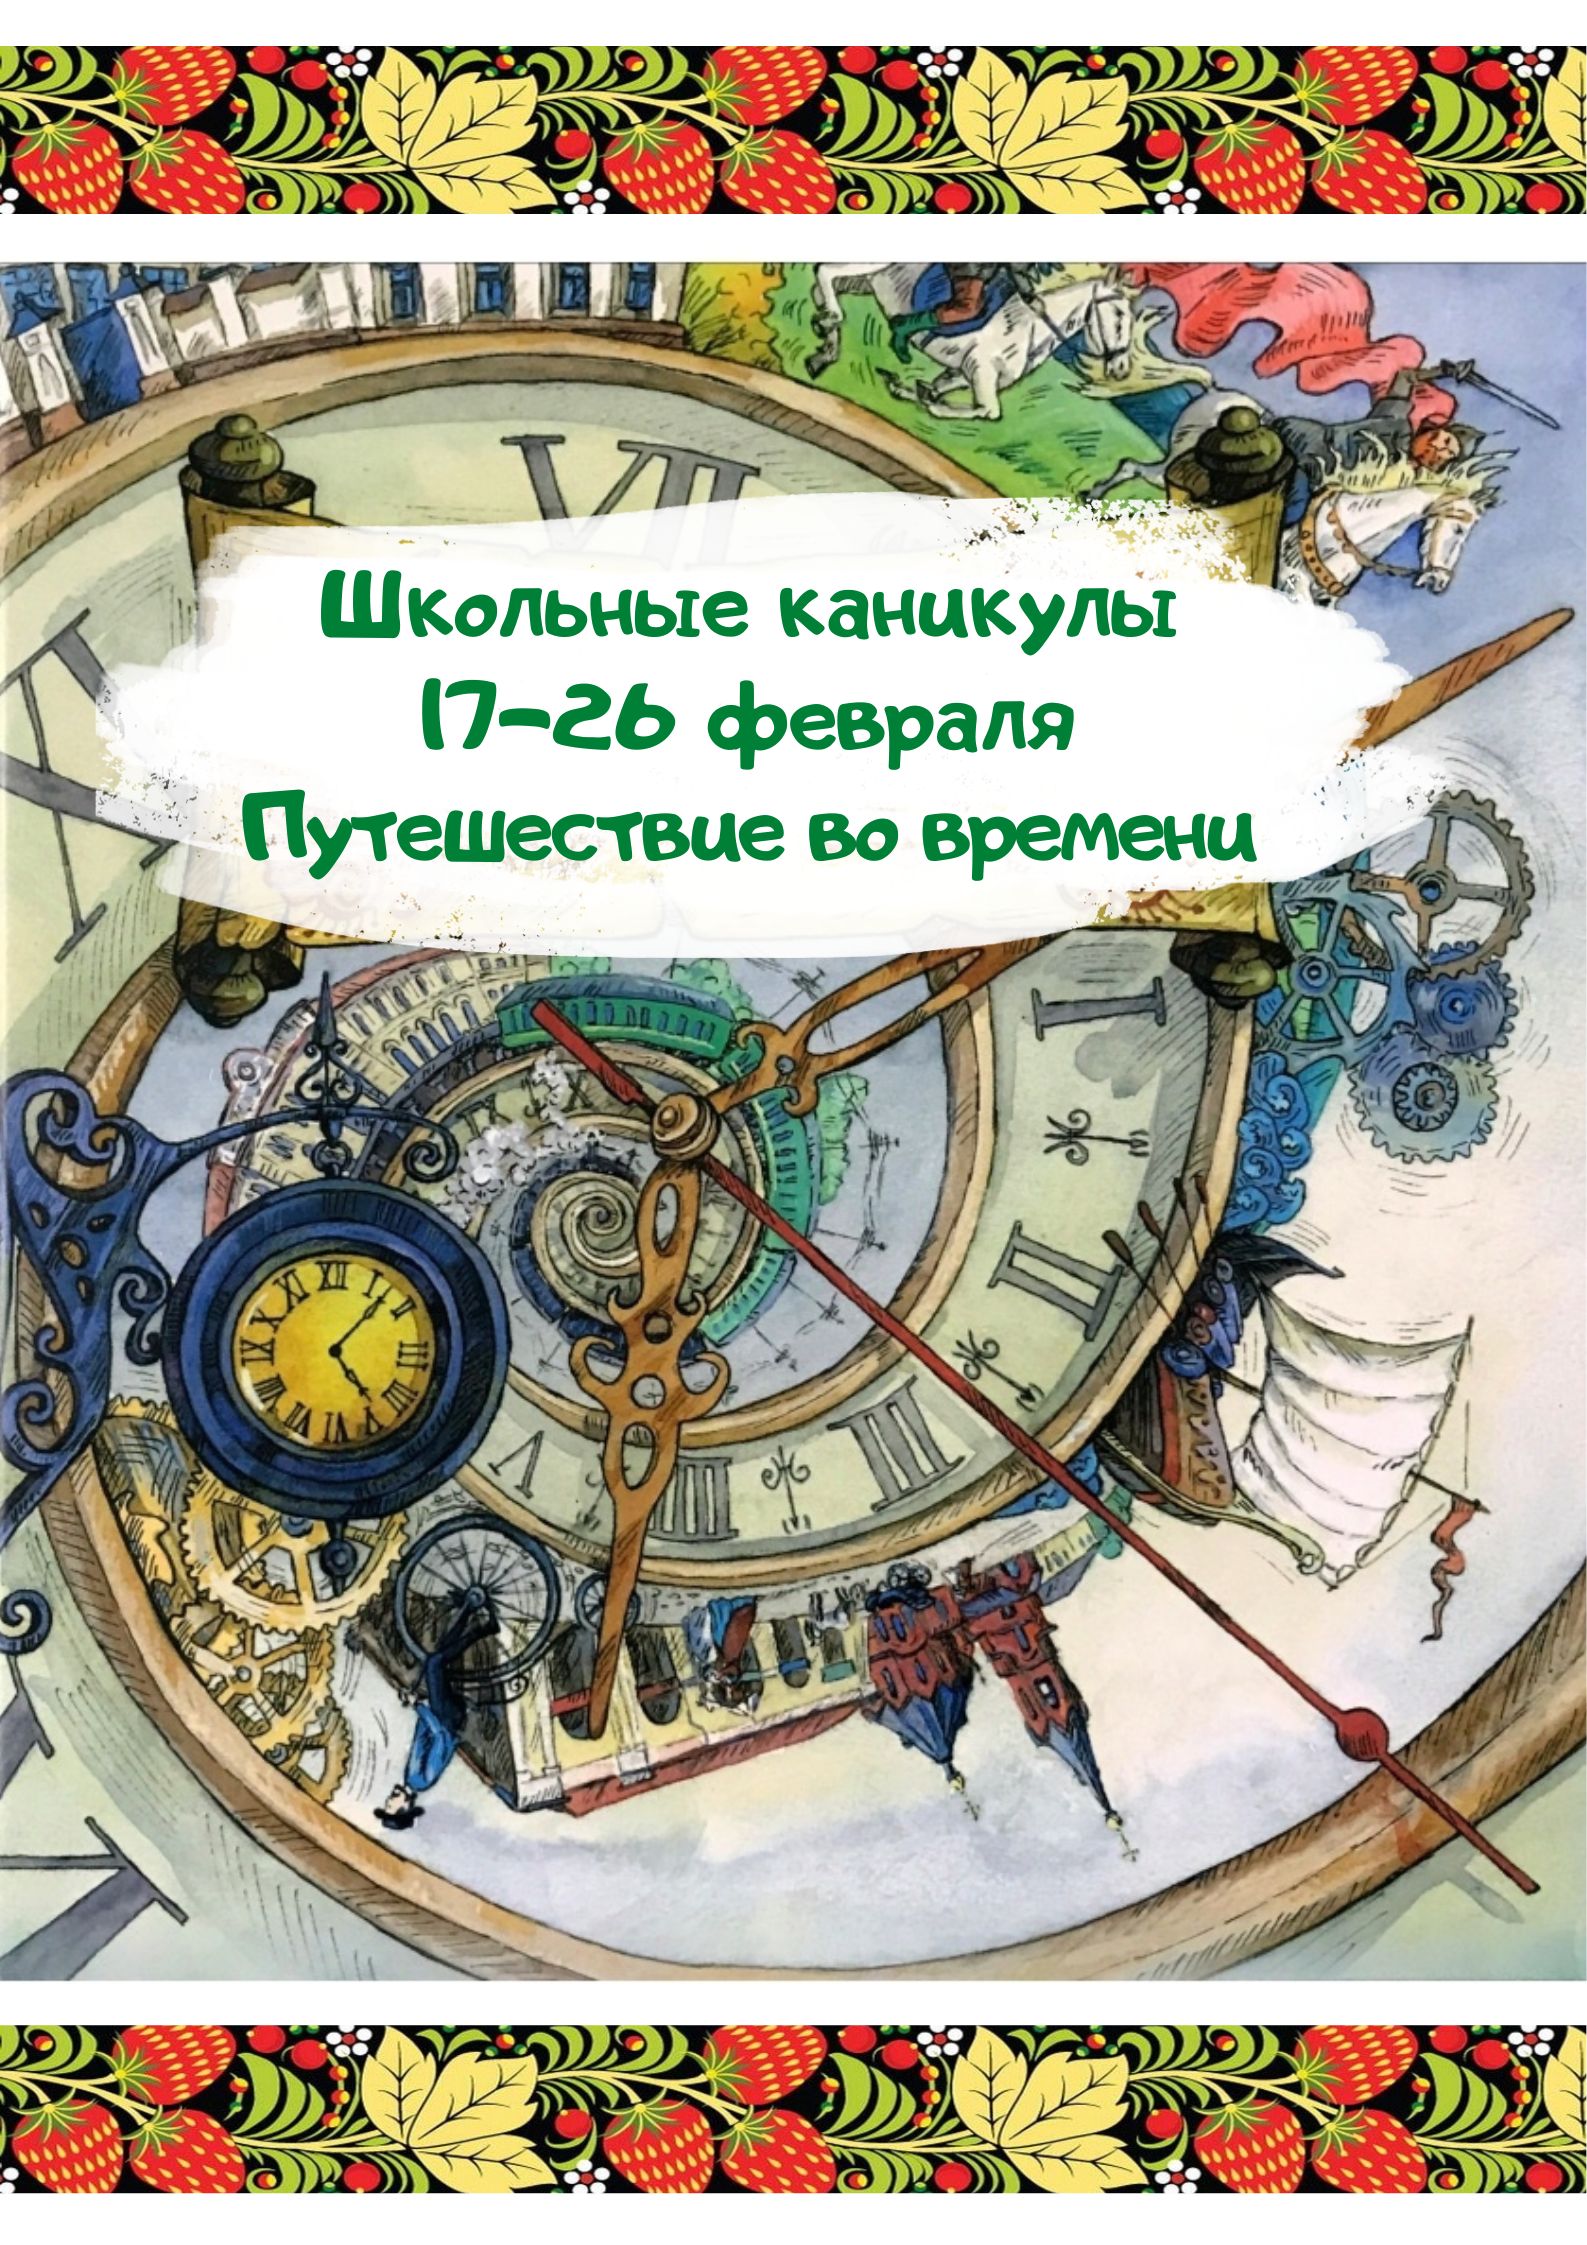 Каникулы в Подмосковье «Путешествие во времени» - (17-26 февраля)